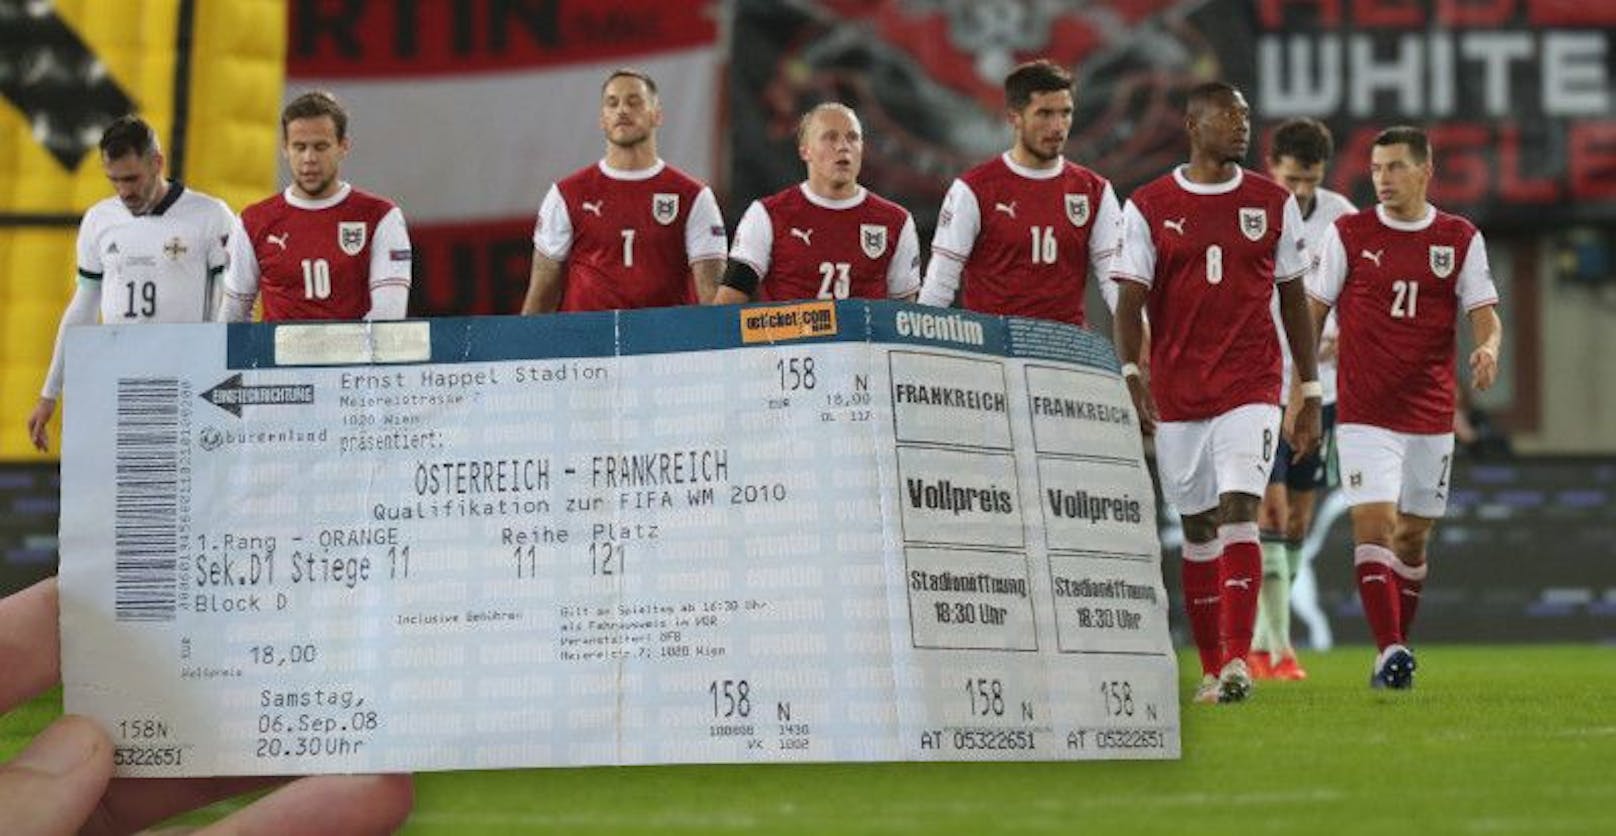 Das Ticket aus dem Jahr 2008 und das aktuelle Nationalteam: Heute ist das Ticket viel teuerer.